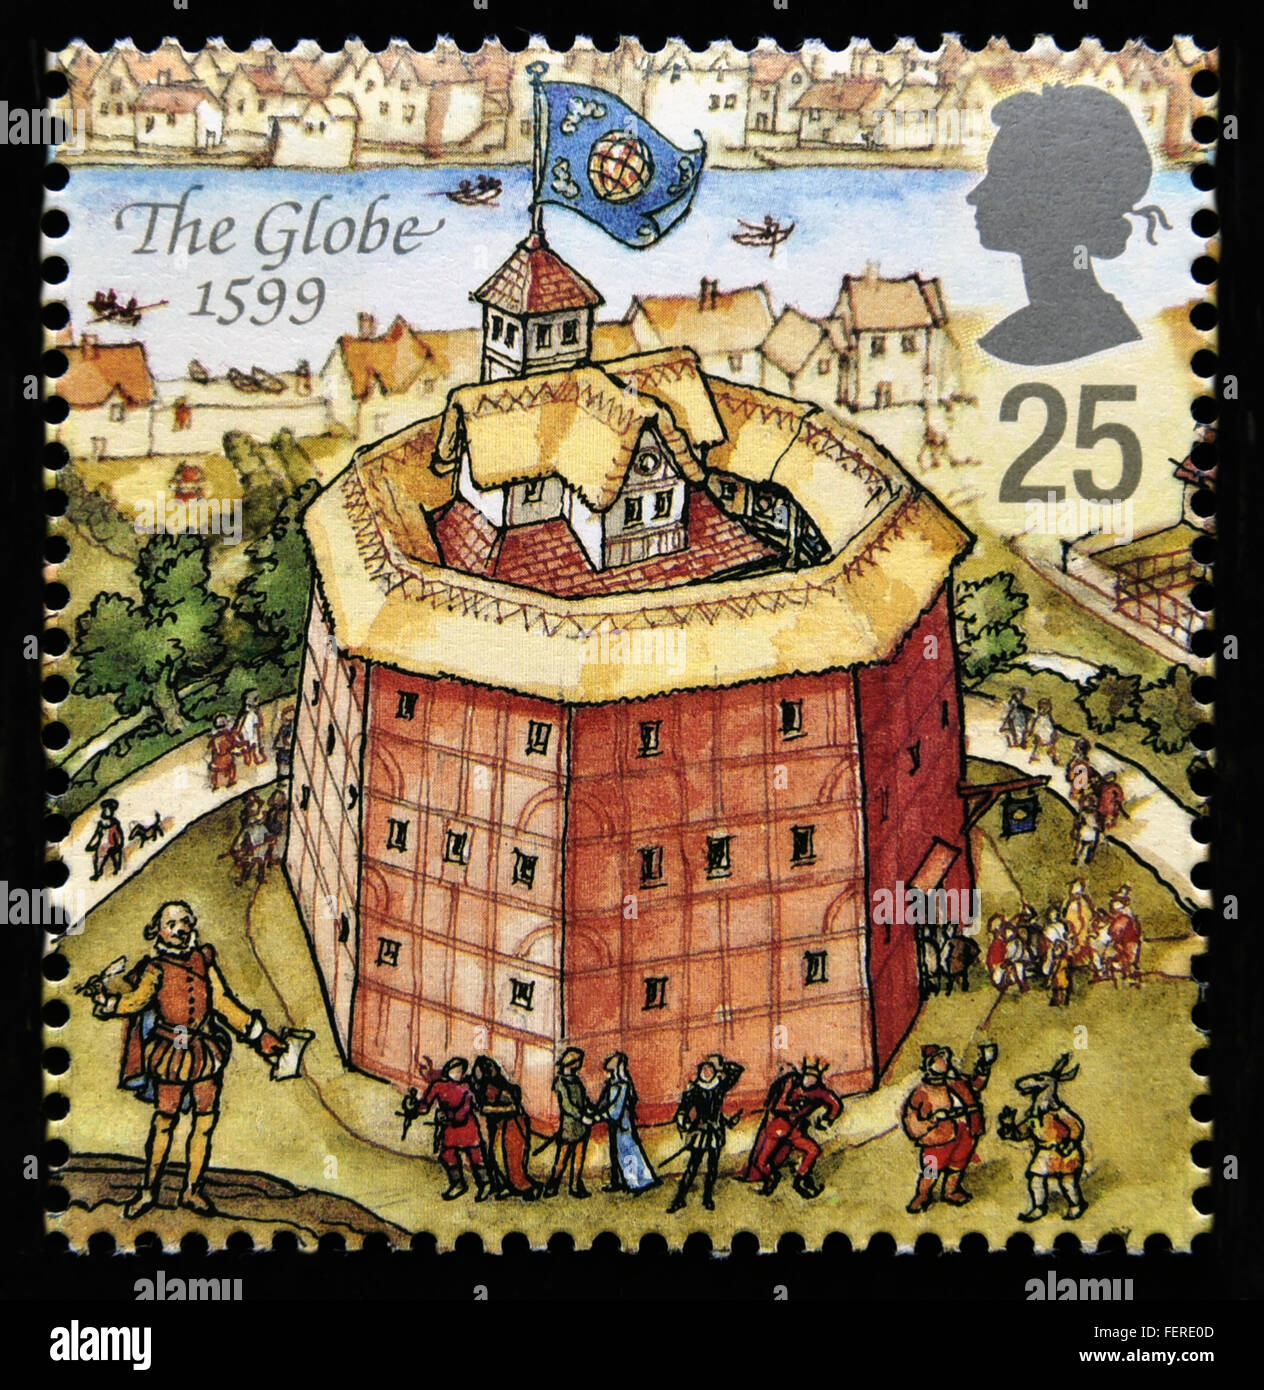 Briefmarke. Great Britain. Königin Elizabeth II. 1995. Rekonstruktion von Shakespeares Globe Theatre. Den Globus 1599. Stockfoto